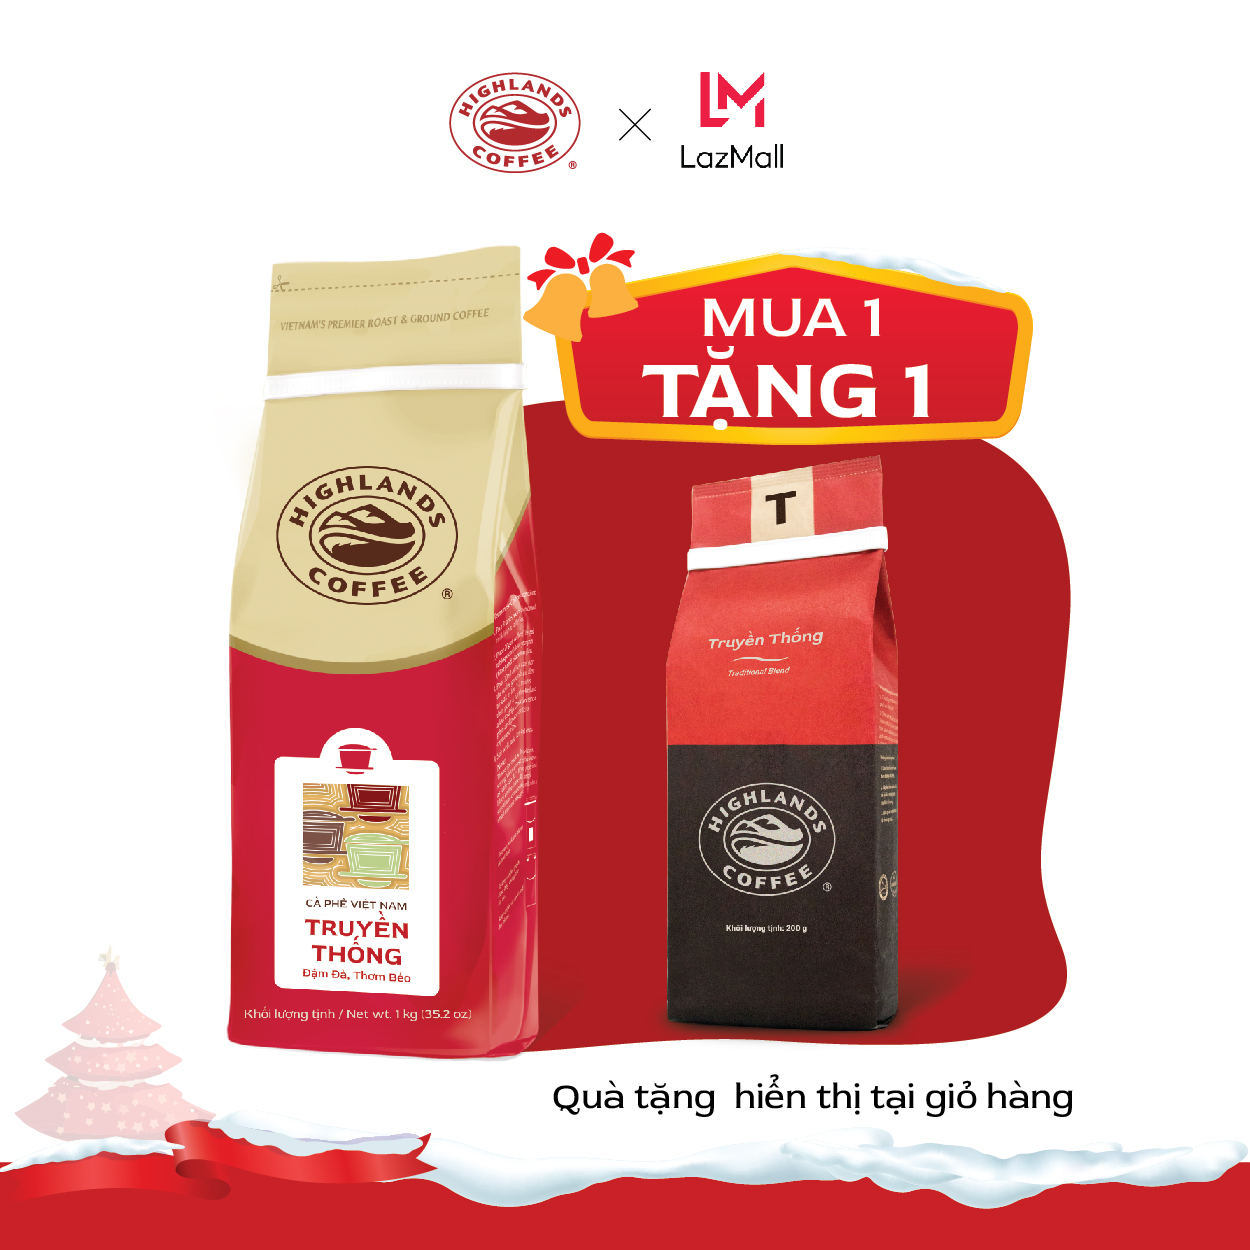 MUA 1 TẶNG 1 - Mua 1 Cà phê bột Truyền thống Highlands Coffee 1kg Tặng gói cf 200gr